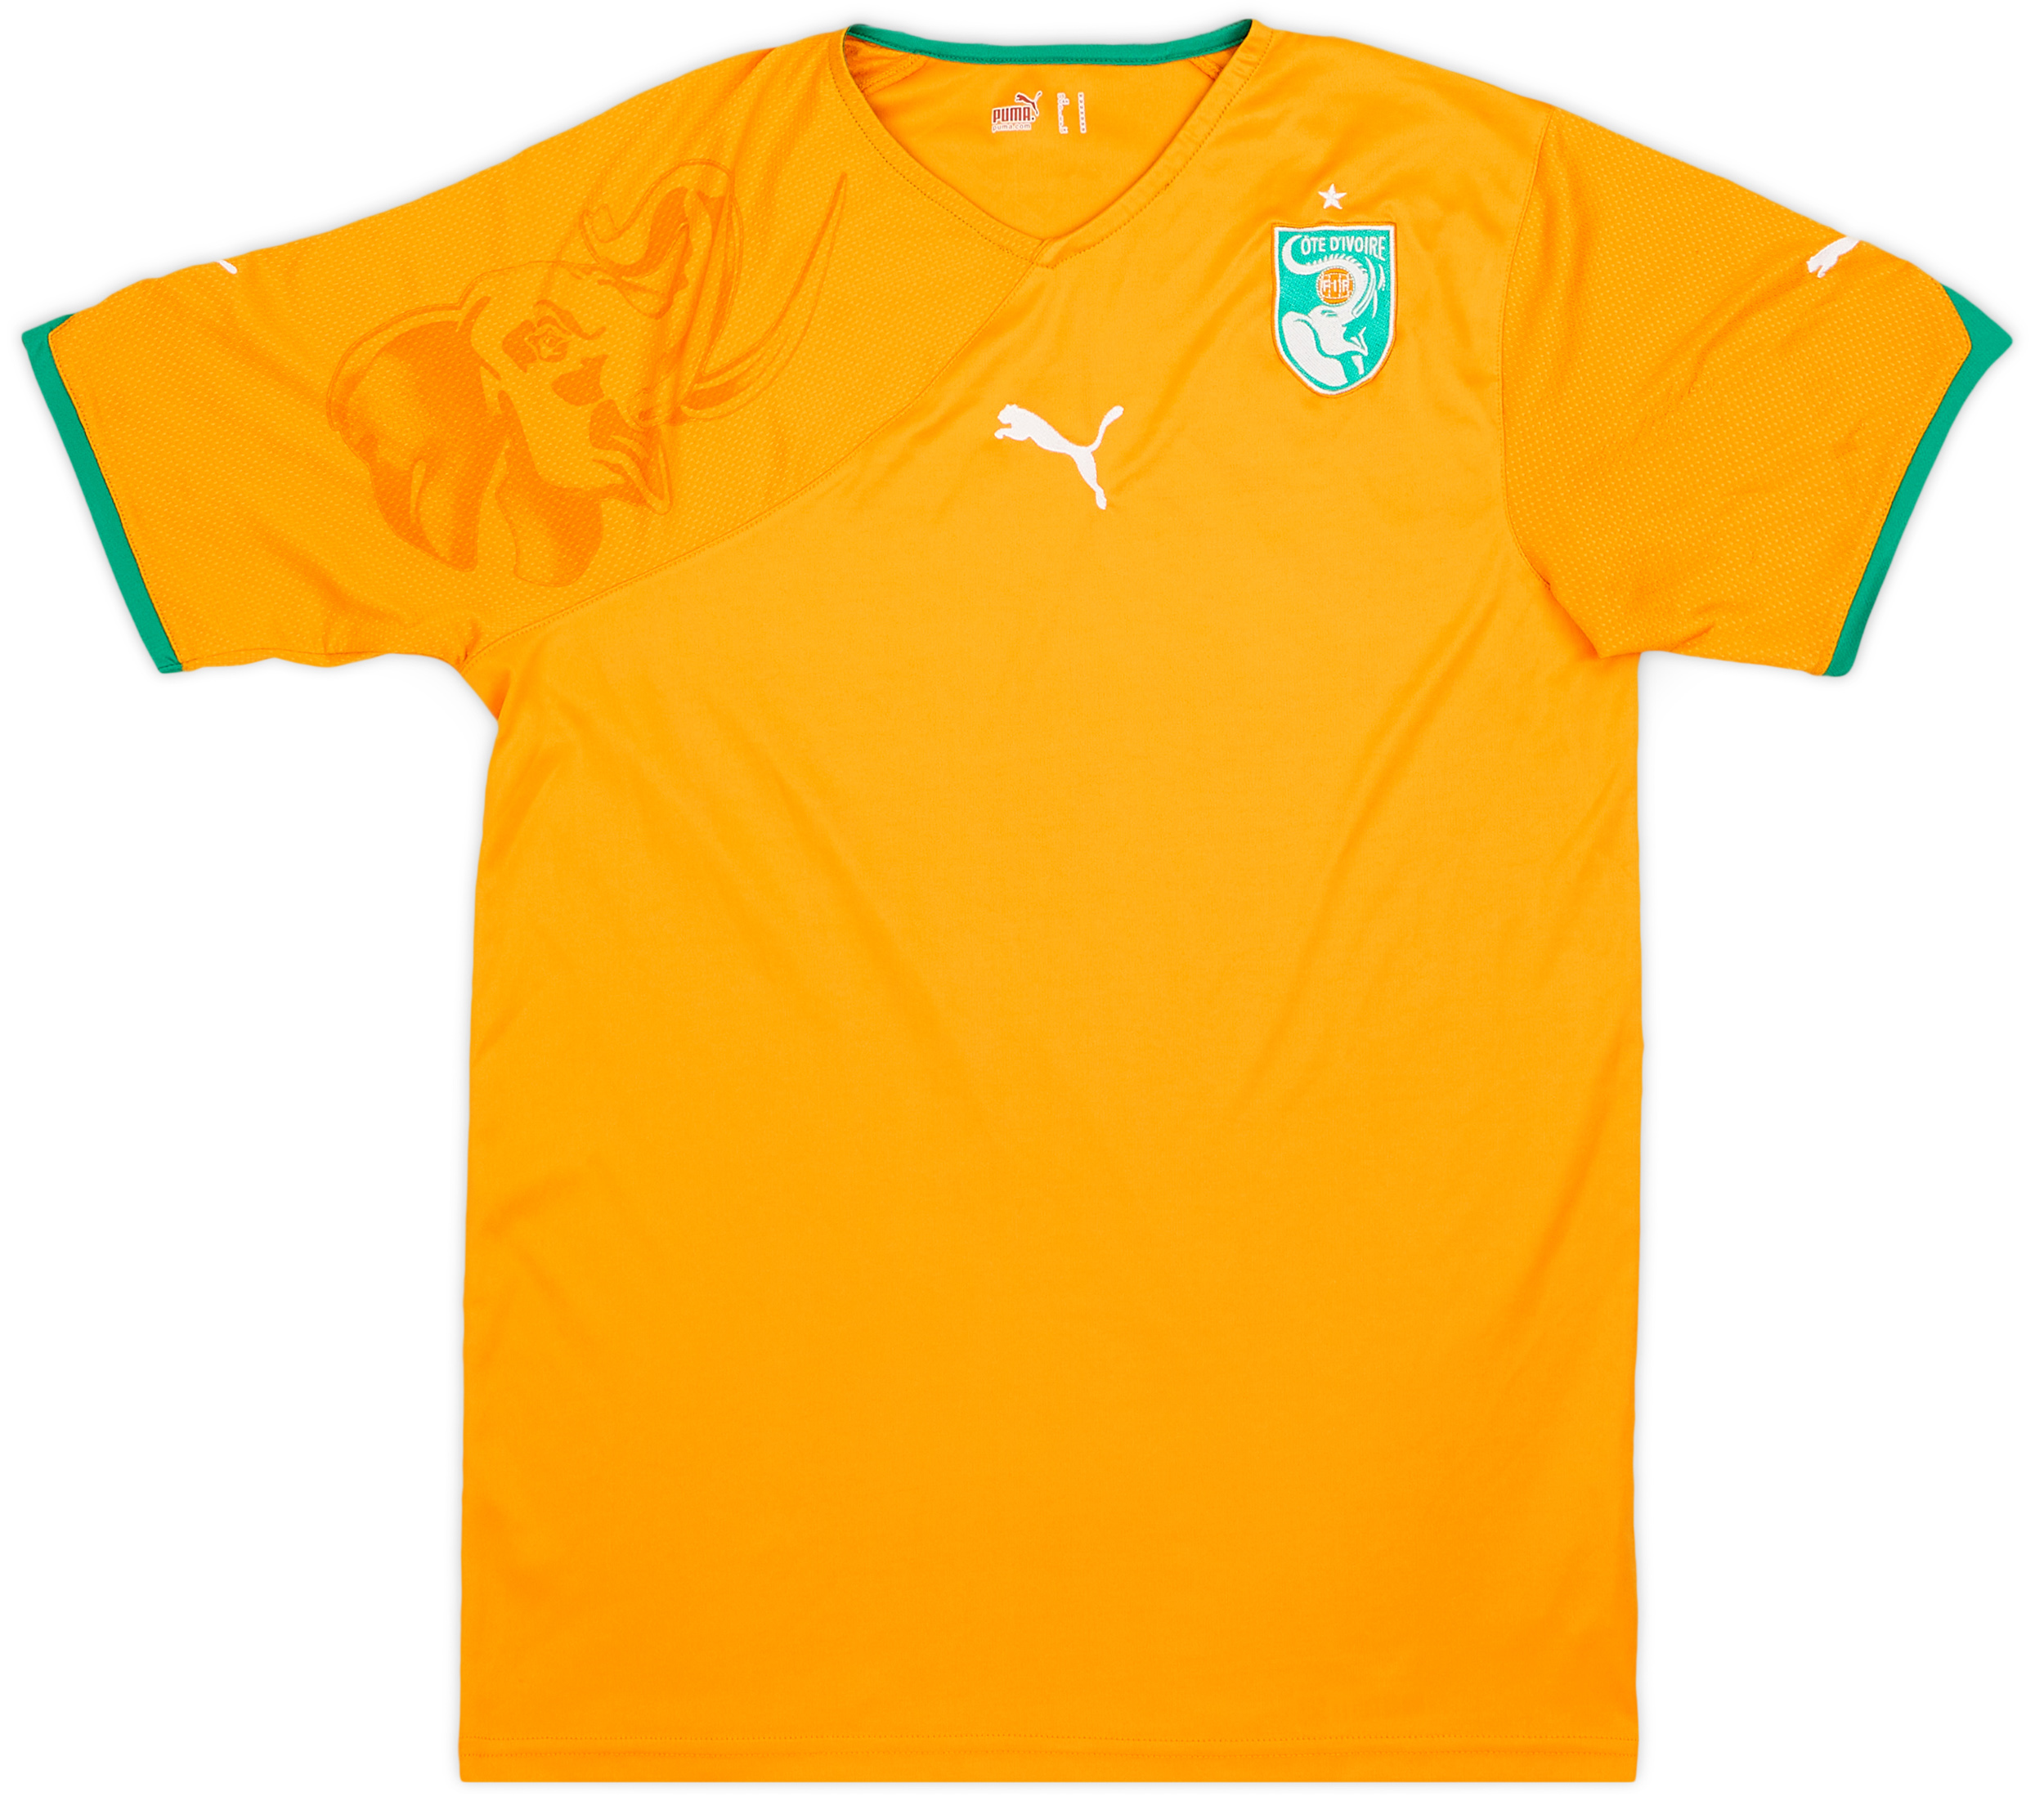 2010-11 Ivory Coast Home Shirt - 9/10 - ()